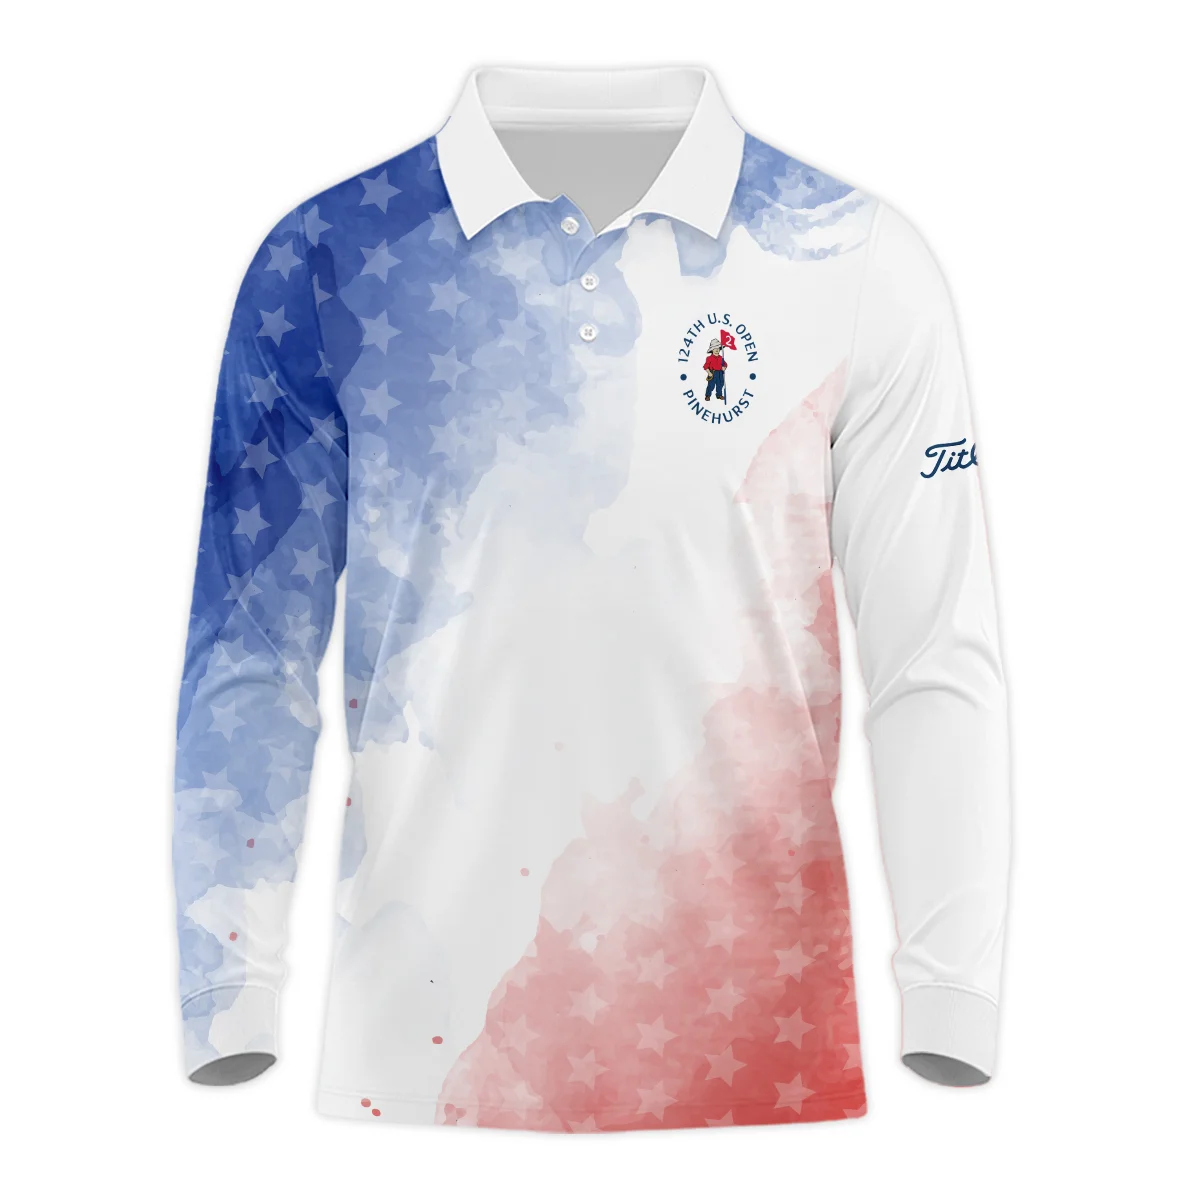 124th U.S. Open Pinehurst Golf Titleist Zipper Hoodie Shirt Stars Blue Red Watercolor Golf Sports All Over Print Zipper Hoodie Shirt